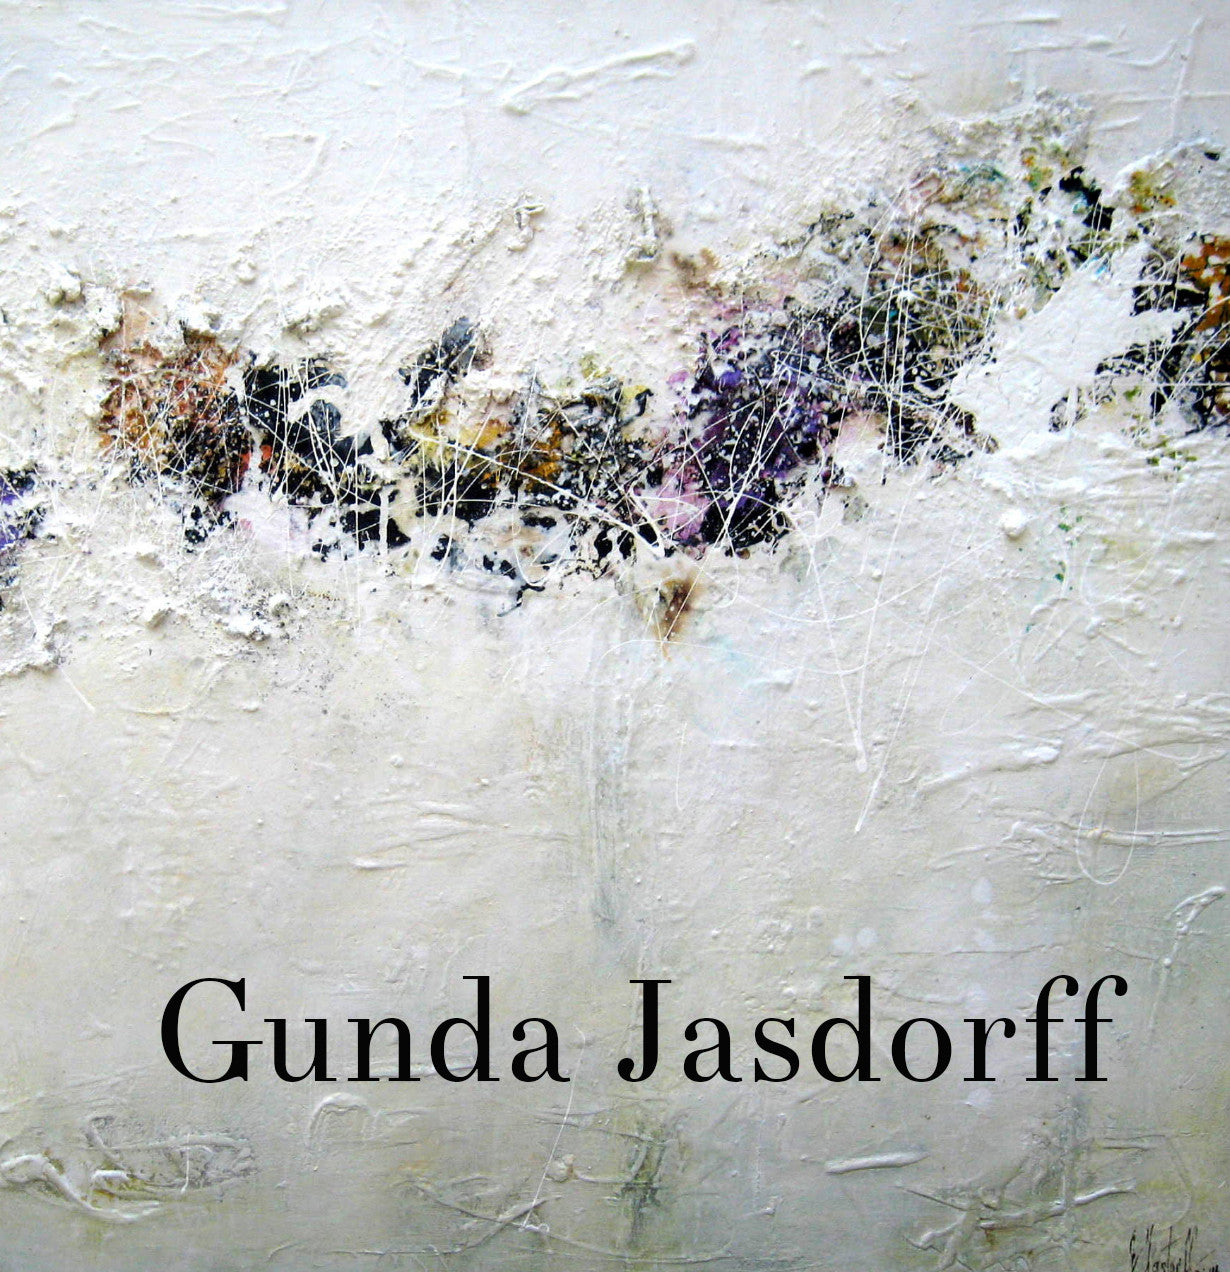 Gunda Jasdorff